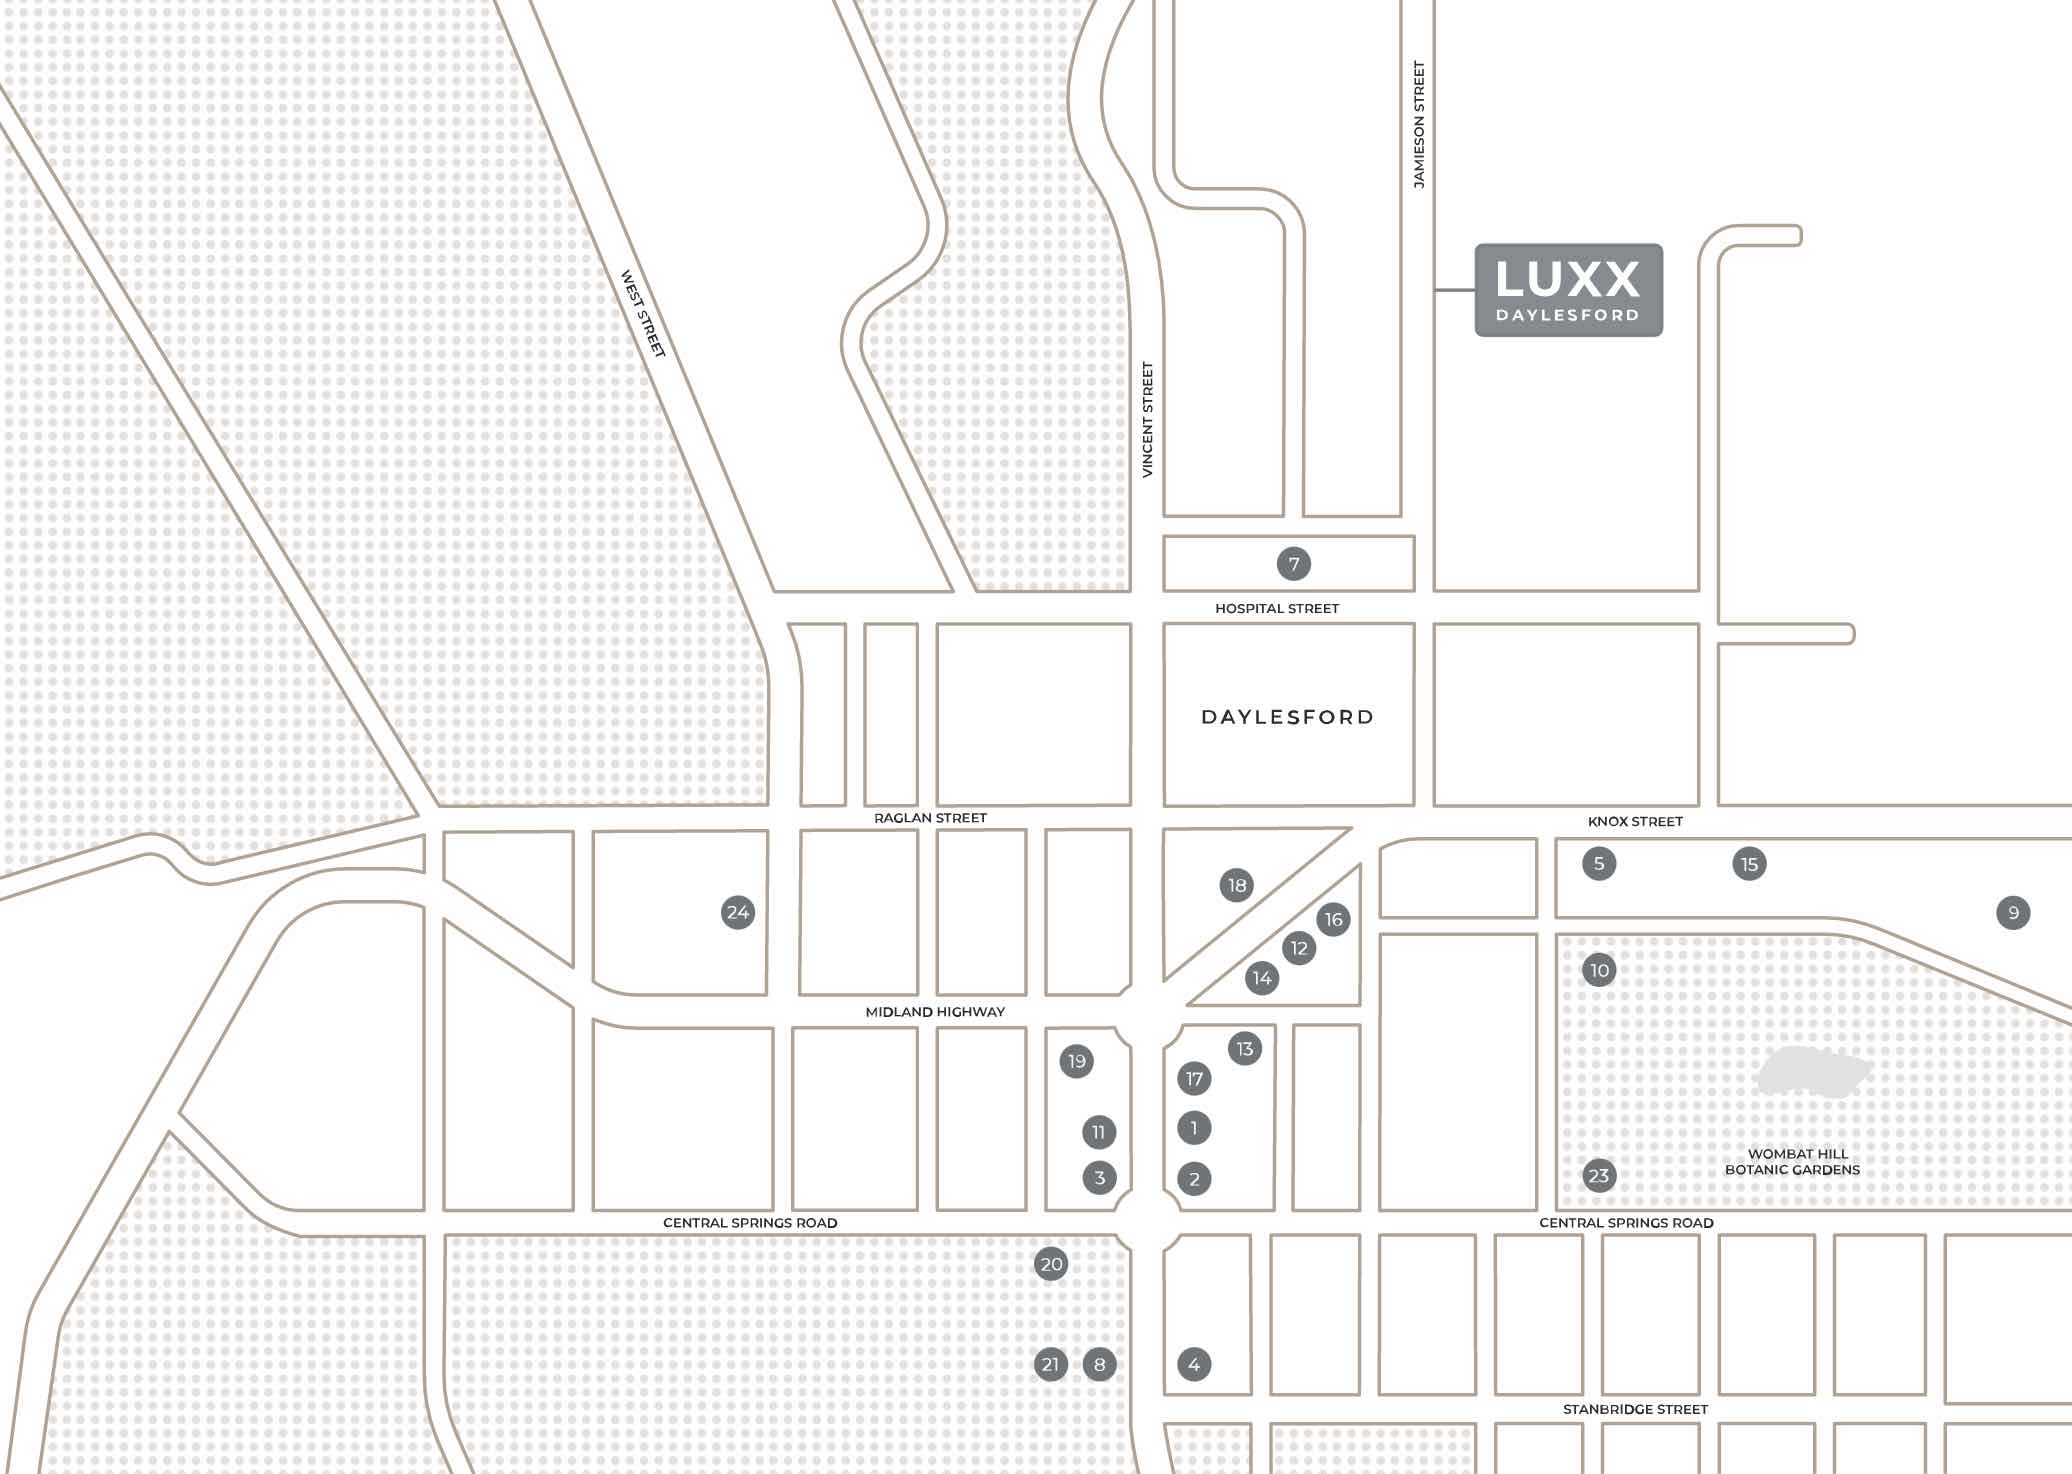 Luxx Estate - Daylesford Location map